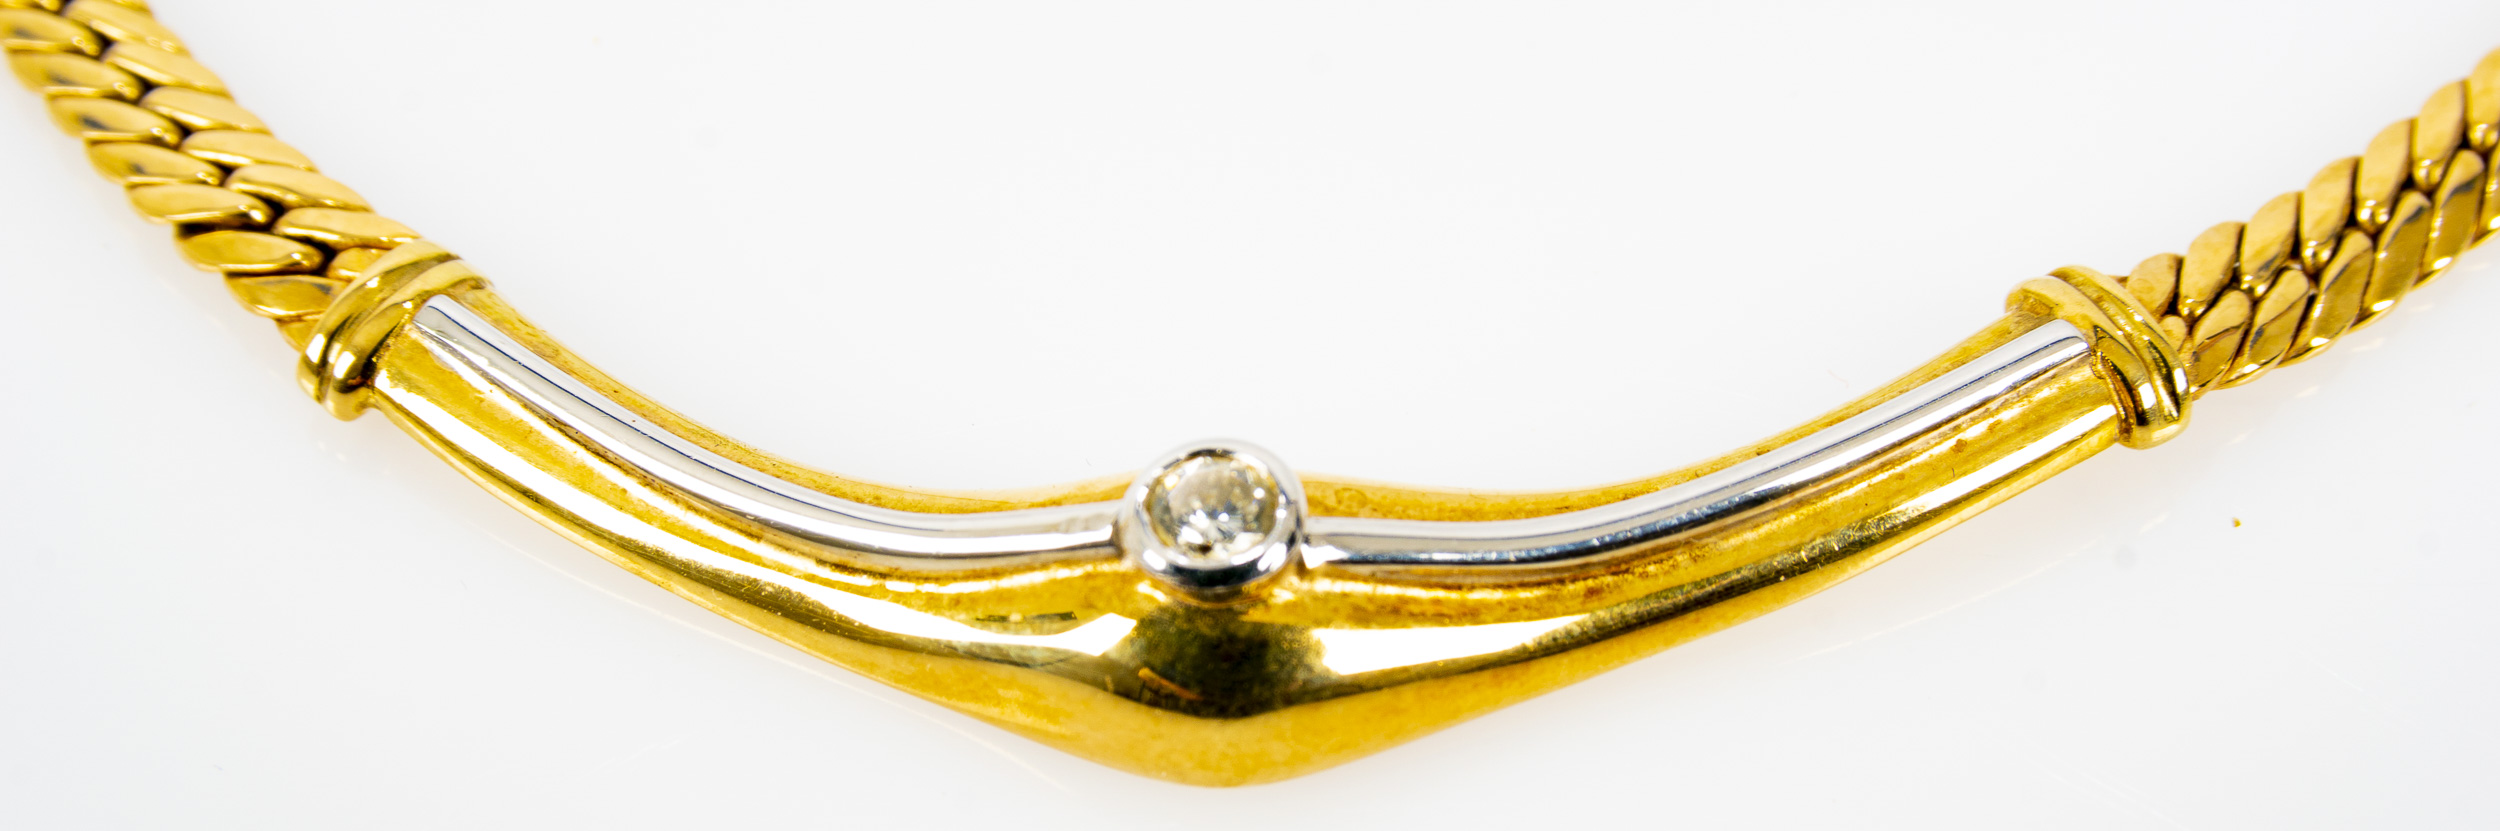 Gliedercollier aus 14 kt. Gelbgold in zeitlos attraktivem Design aus dem Hause "Weiss". Das bogenfö - Image 5 of 10